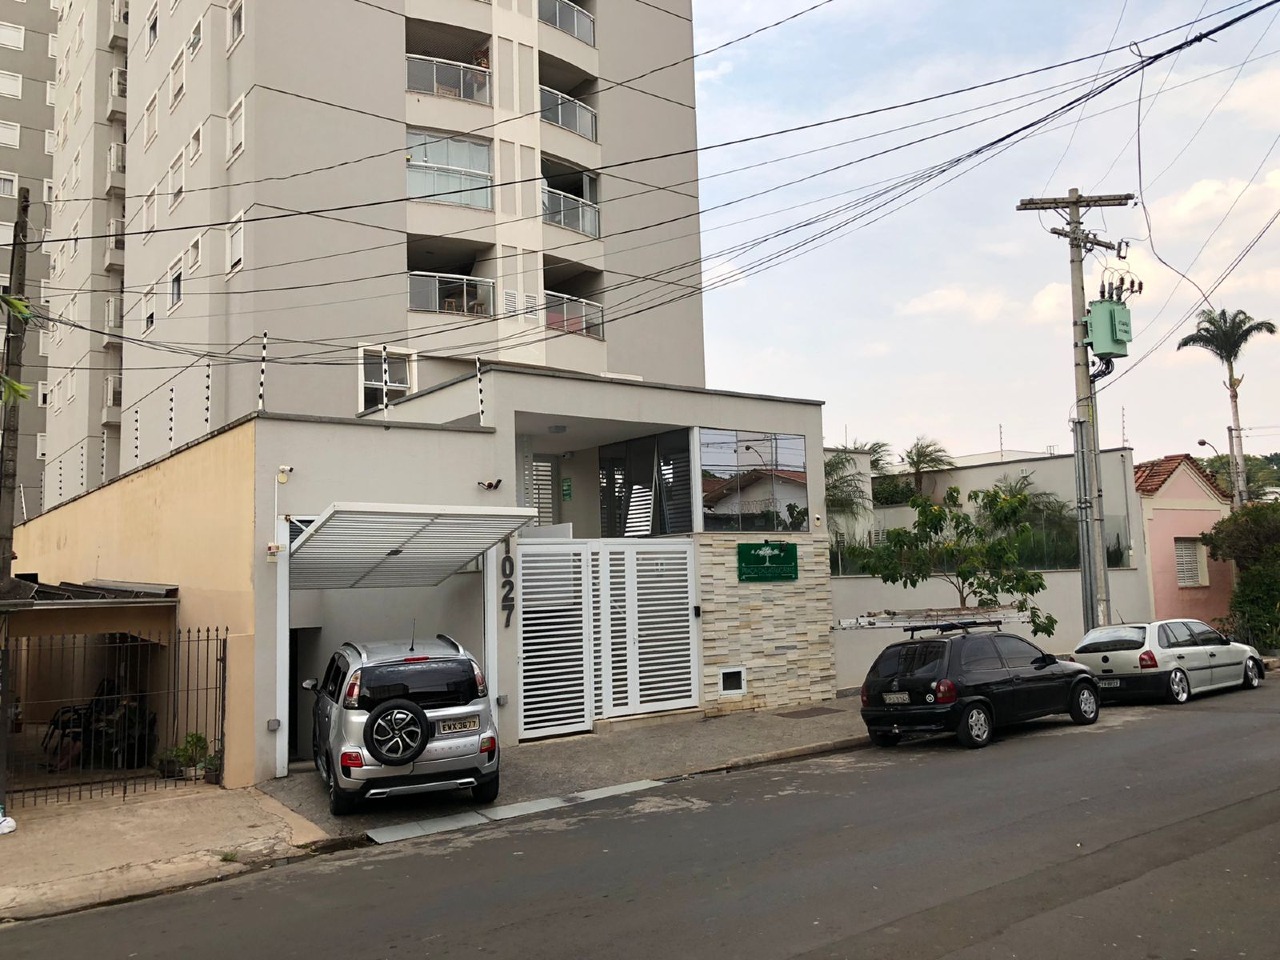 Apartamento para comprar, 3 quartos, 1 suíte, 2 vagas, no bairro São Dimas em Piracicaba - SP